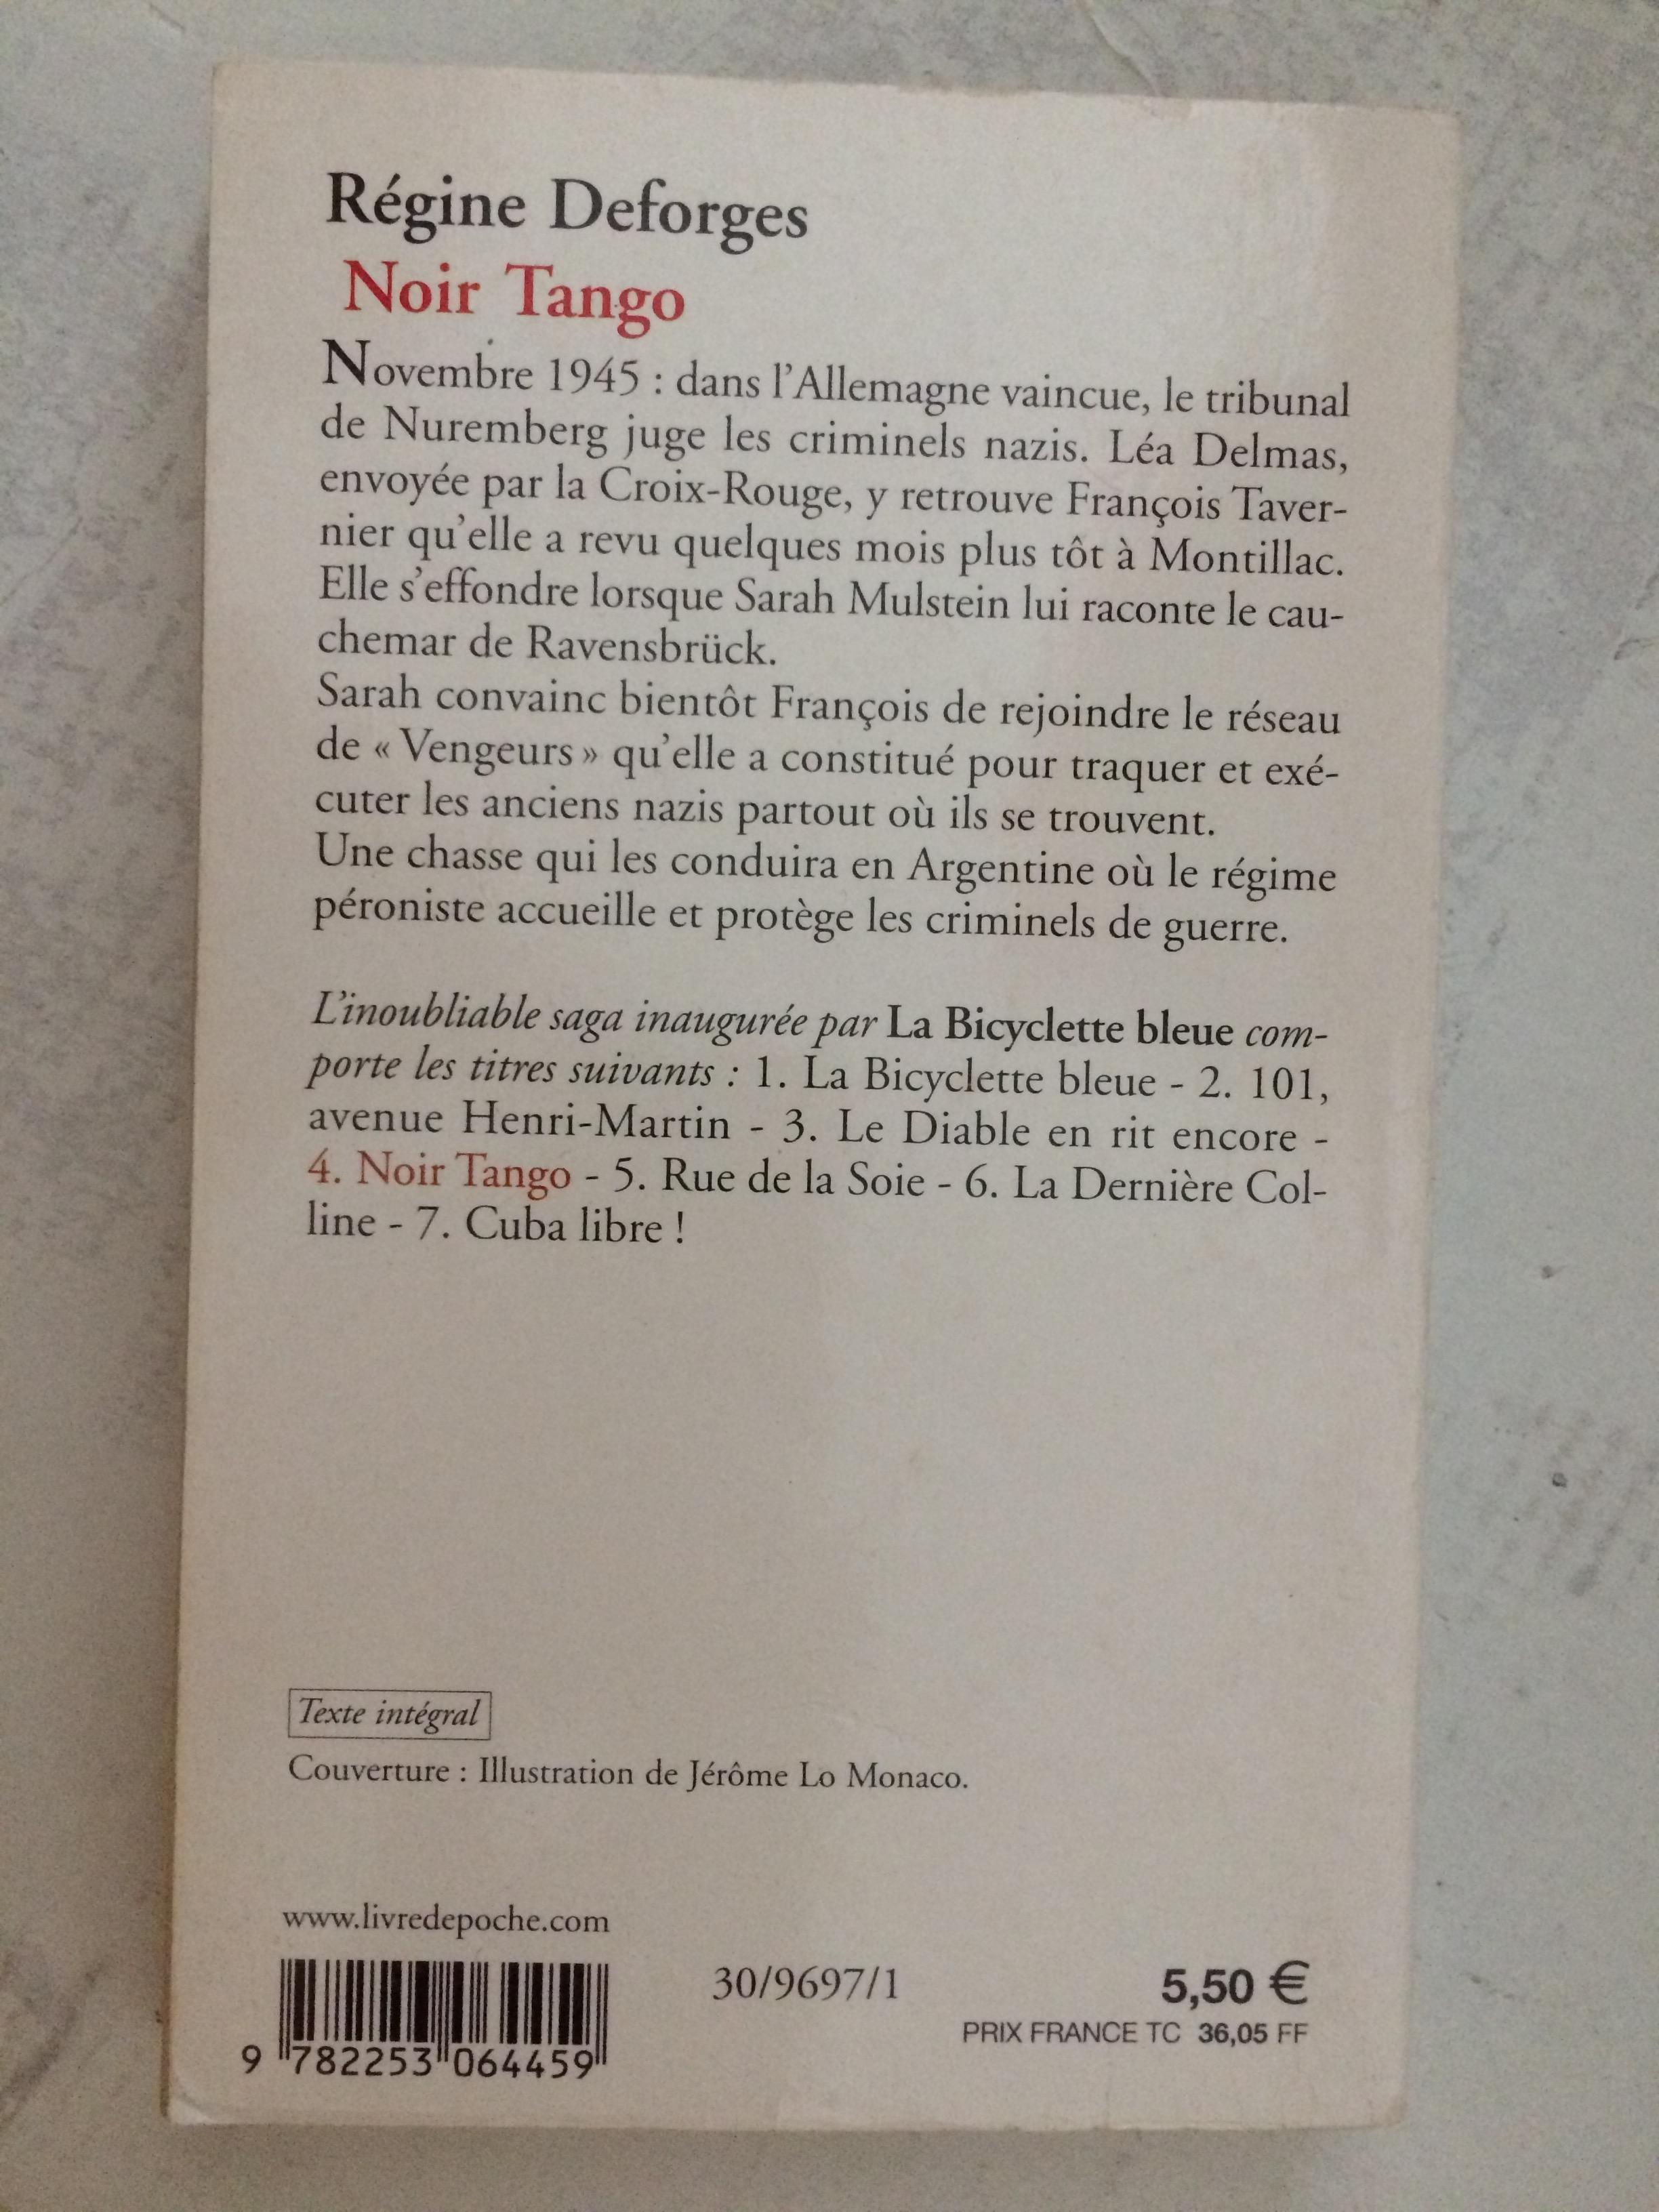 troc de troc noir tango - la bicyclette bleue - 1945-1947 de régine deforges image 1